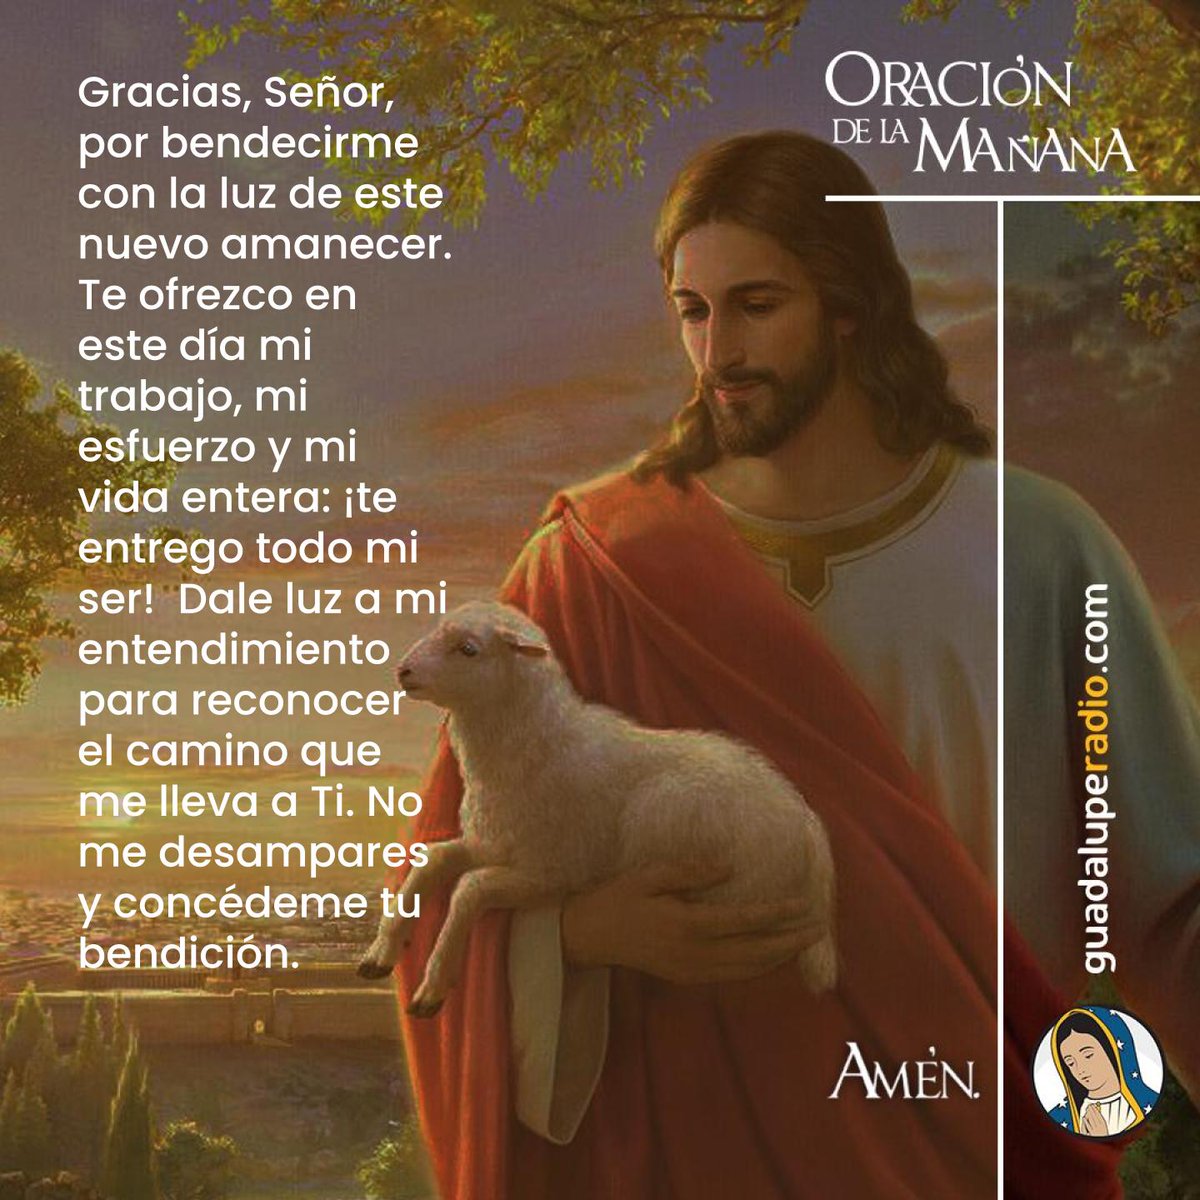 Gracias, Señor, por bendecirme con la luz de este nuevo amanecer.
#OracionMañana
#GuadalupeRadio